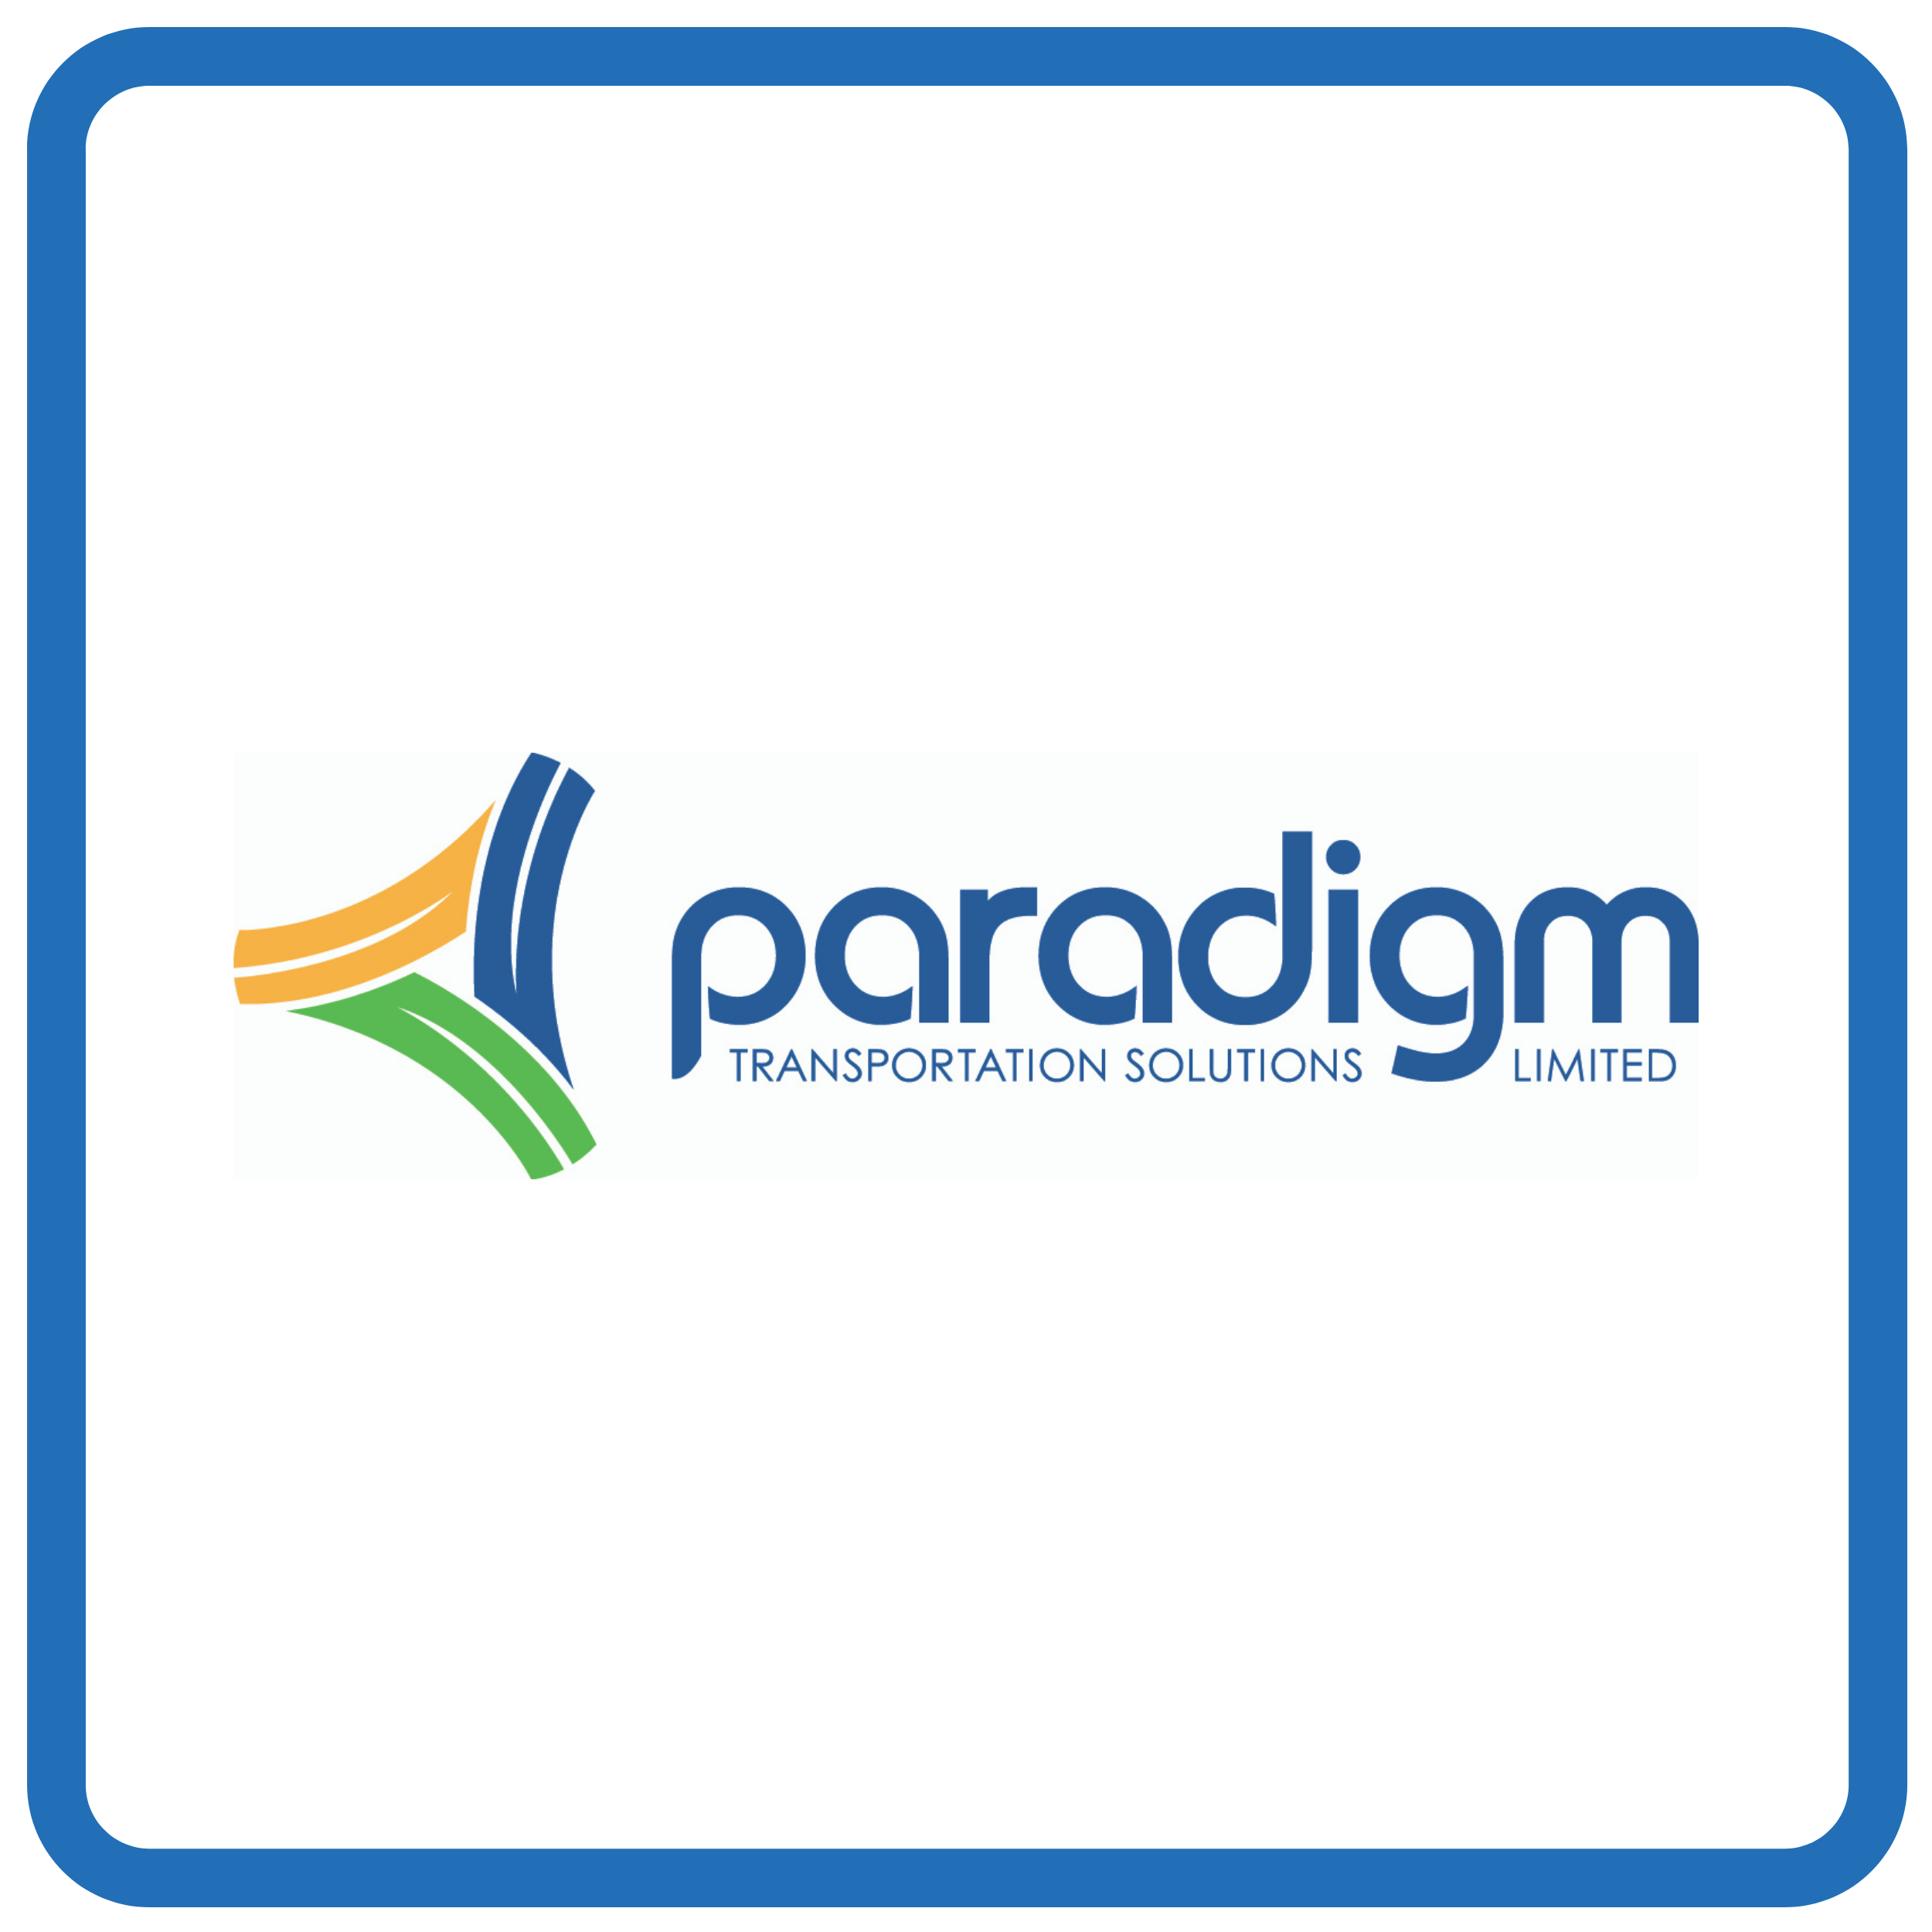 Paradigm Transportation Solutions